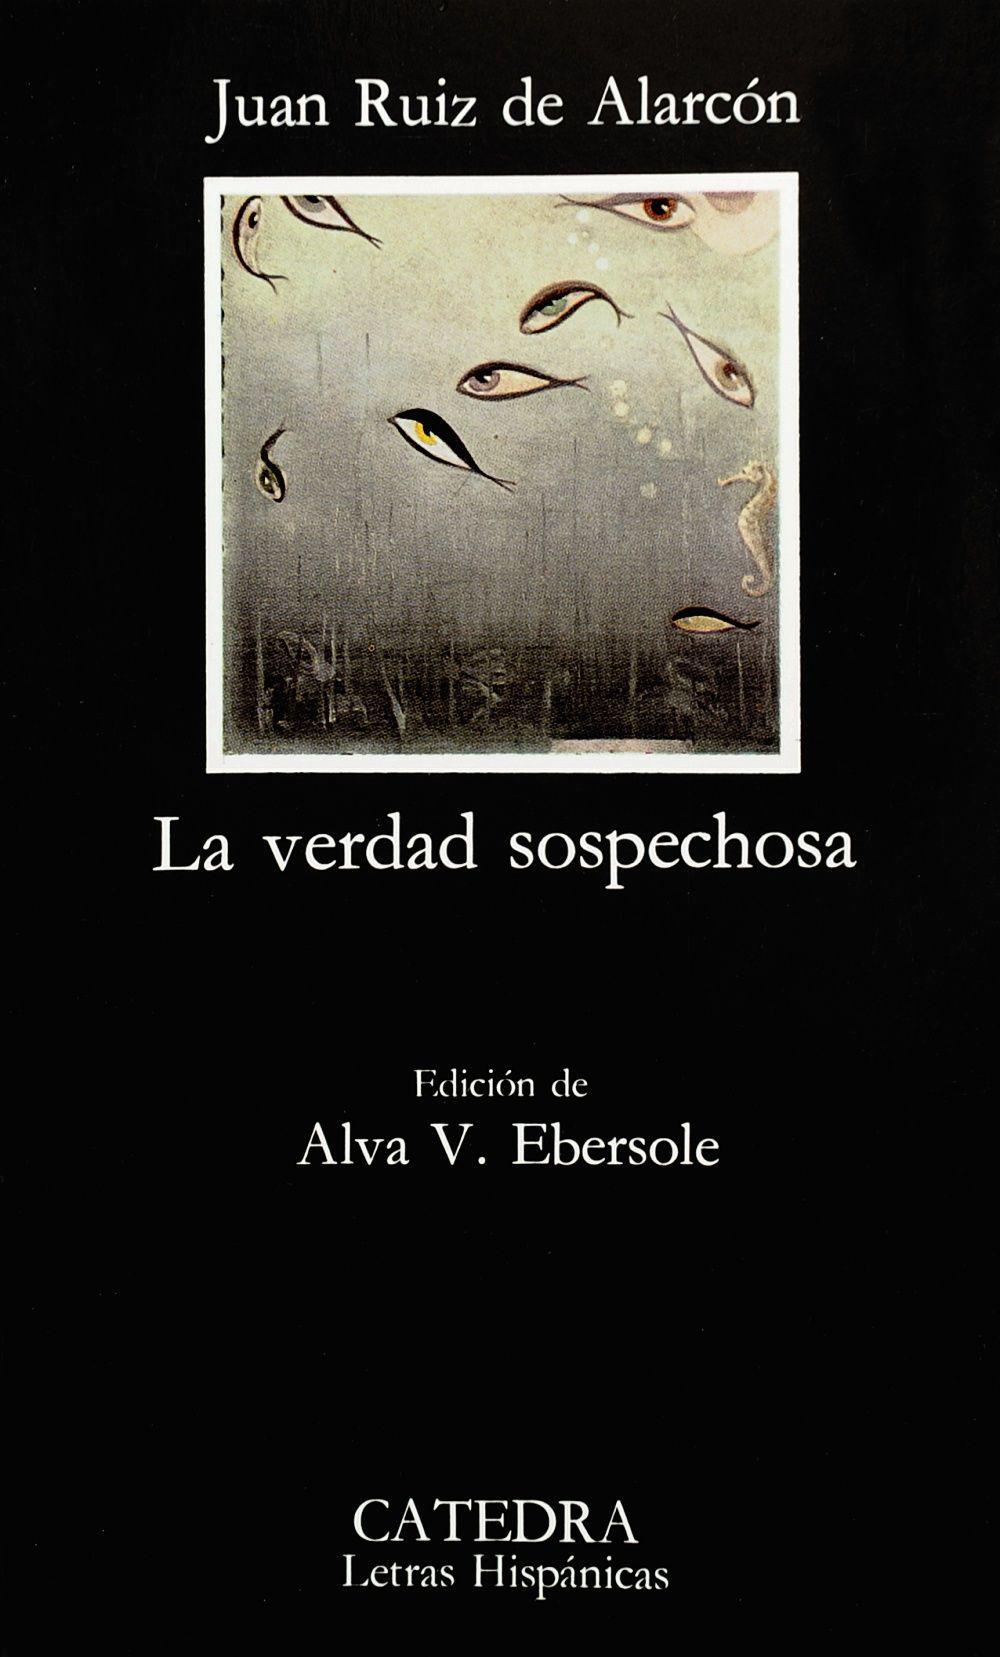 La Verdad Sospechosa  Juan Ruiz de Alarcon  Buch  Letras Hispanicas  Spanisch  1976 - Ruiz de Alarcon, Juan